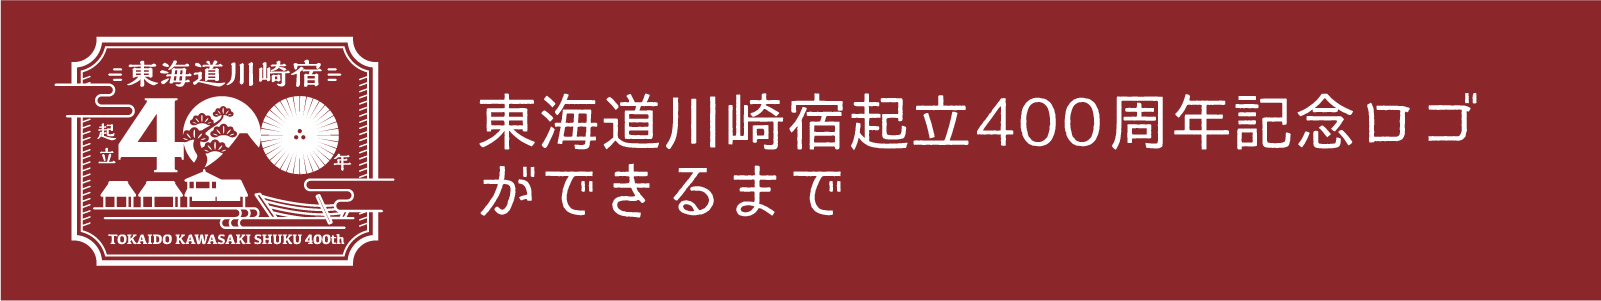 東海道川崎宿起立400周年記念ロゴができるまで